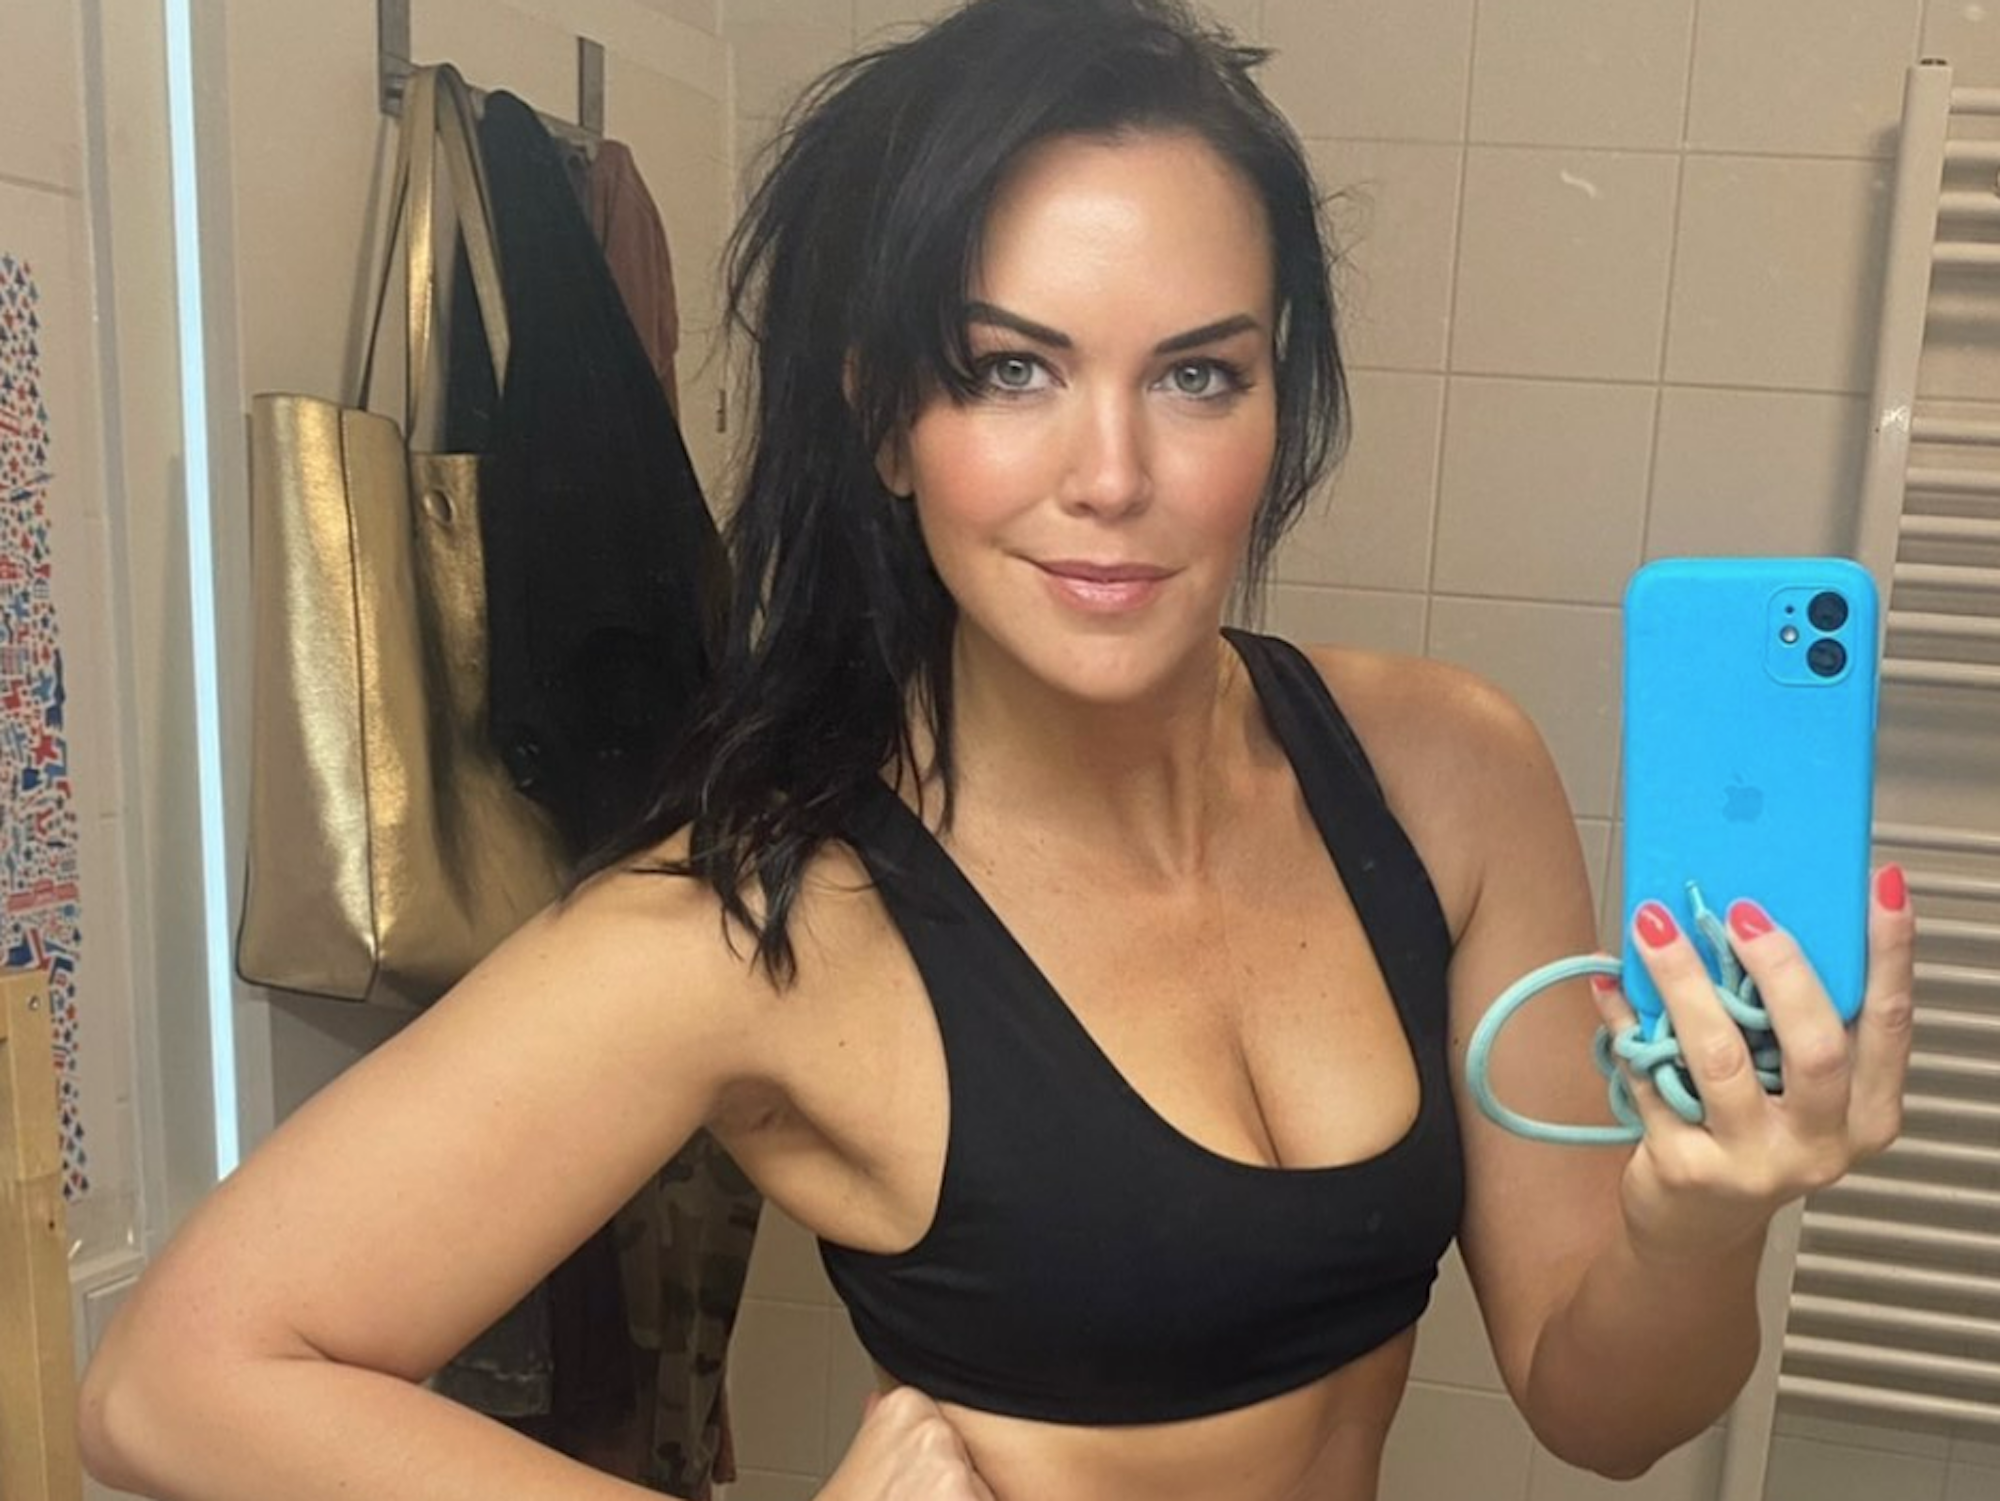 Martina Reuter posiert in ihrem Bad für ein Selfie, welches sie anschließend bei Instagram veröffentlicht hat. Screenshot zur Berichterstattung erstellt.
Foto: Instagram/reuter_martina_official